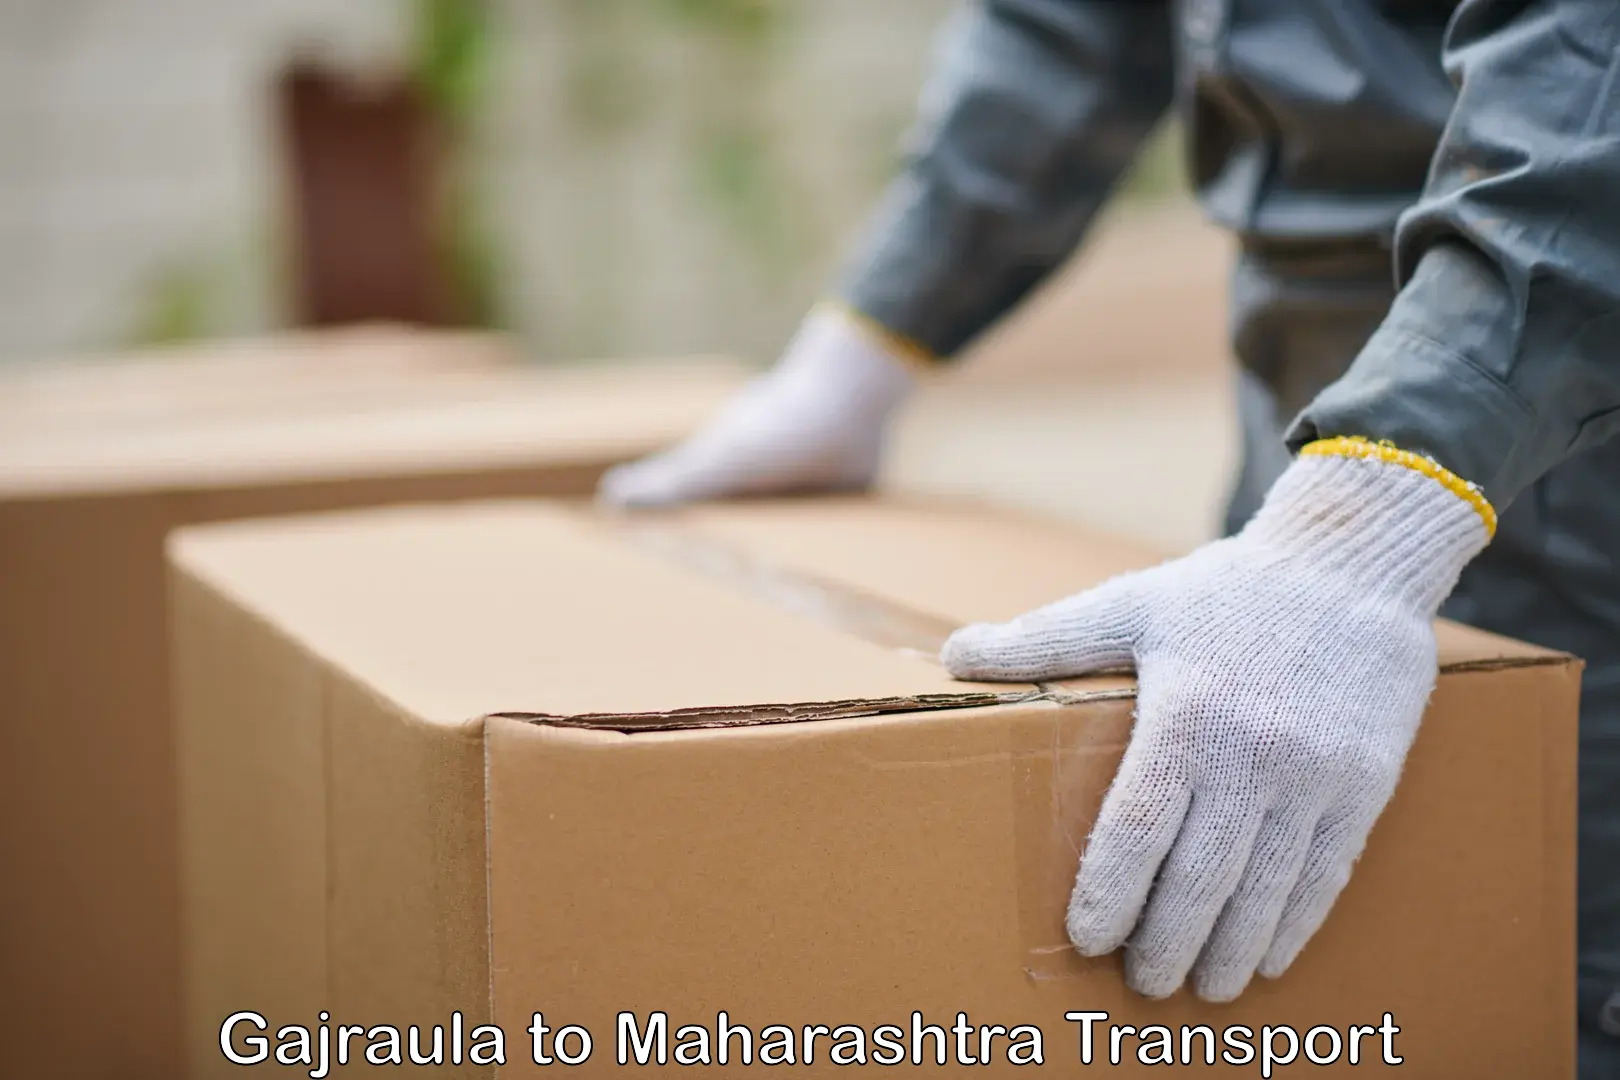 Truck transport companies in India Gajraula to Maharashtra